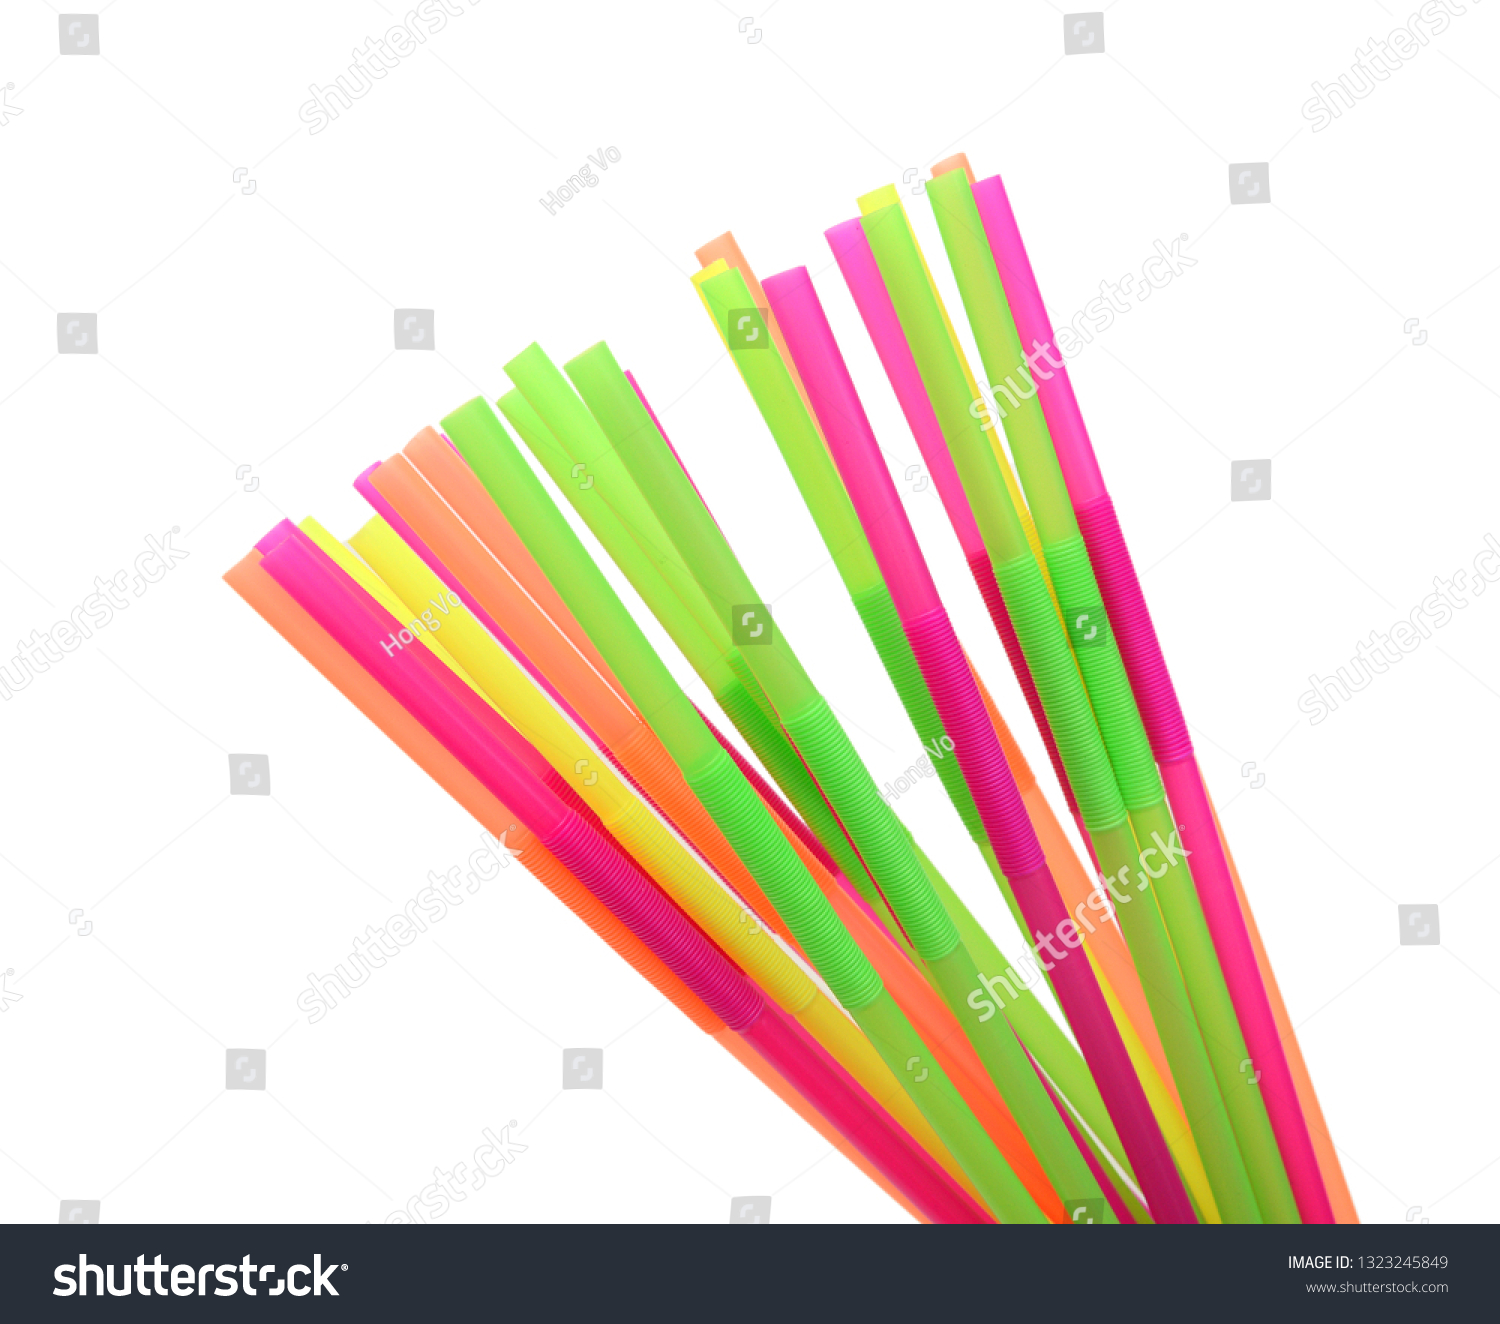 Straw plastic straw drink straw - Image  #1323245849